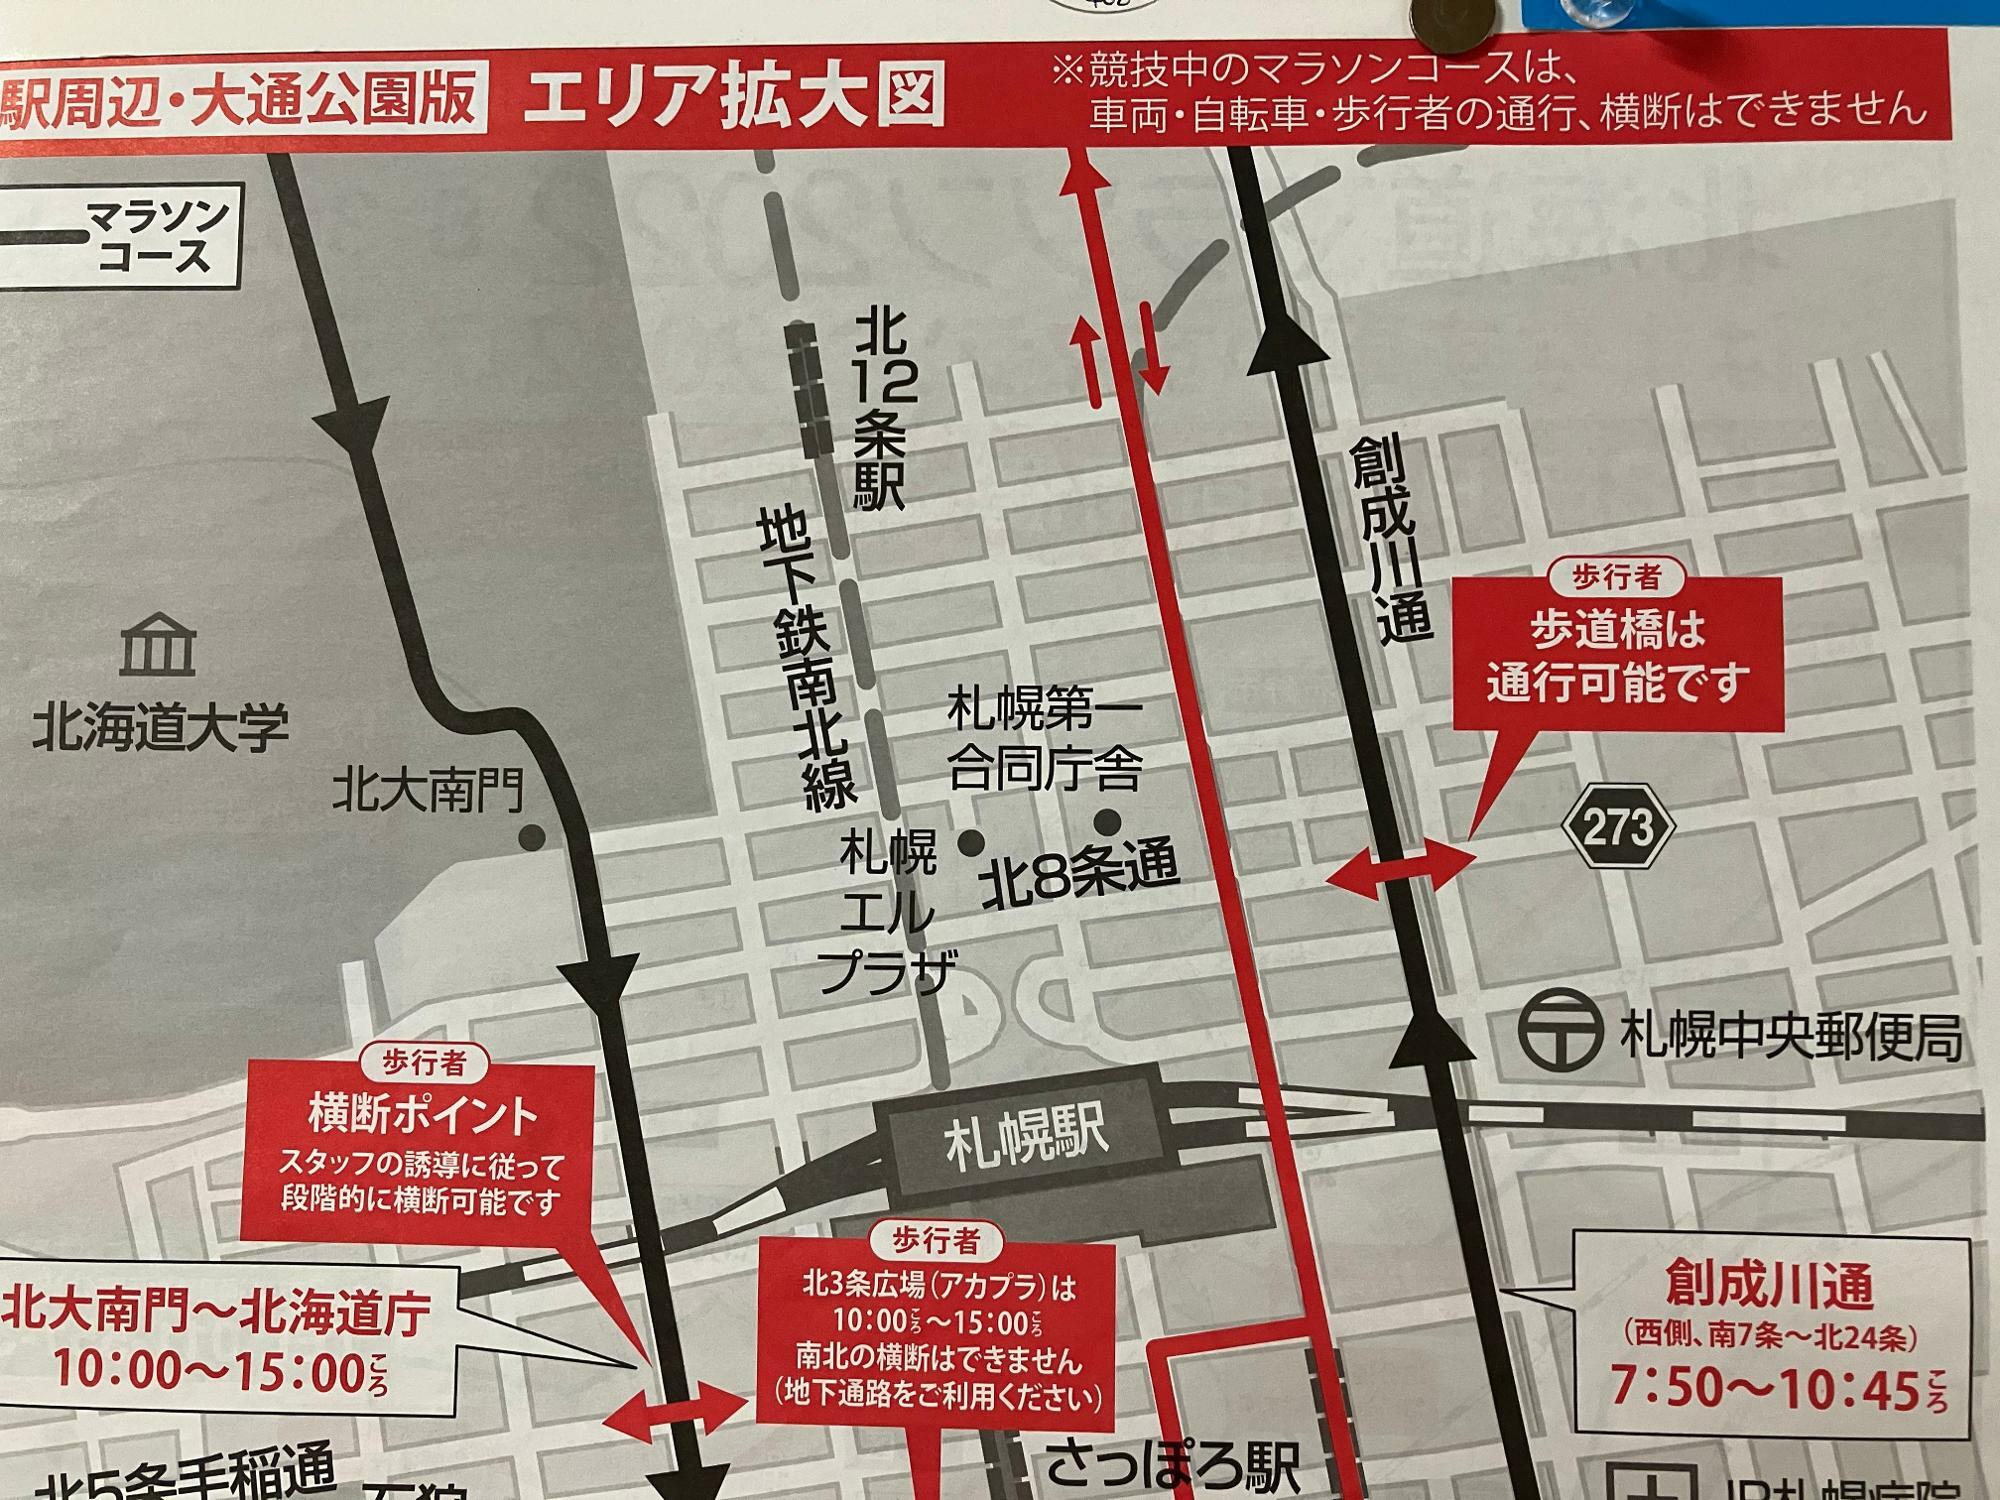 創成川通がマラソンコースのため、7:50～10:45ころまで通行、横断ができないようです。